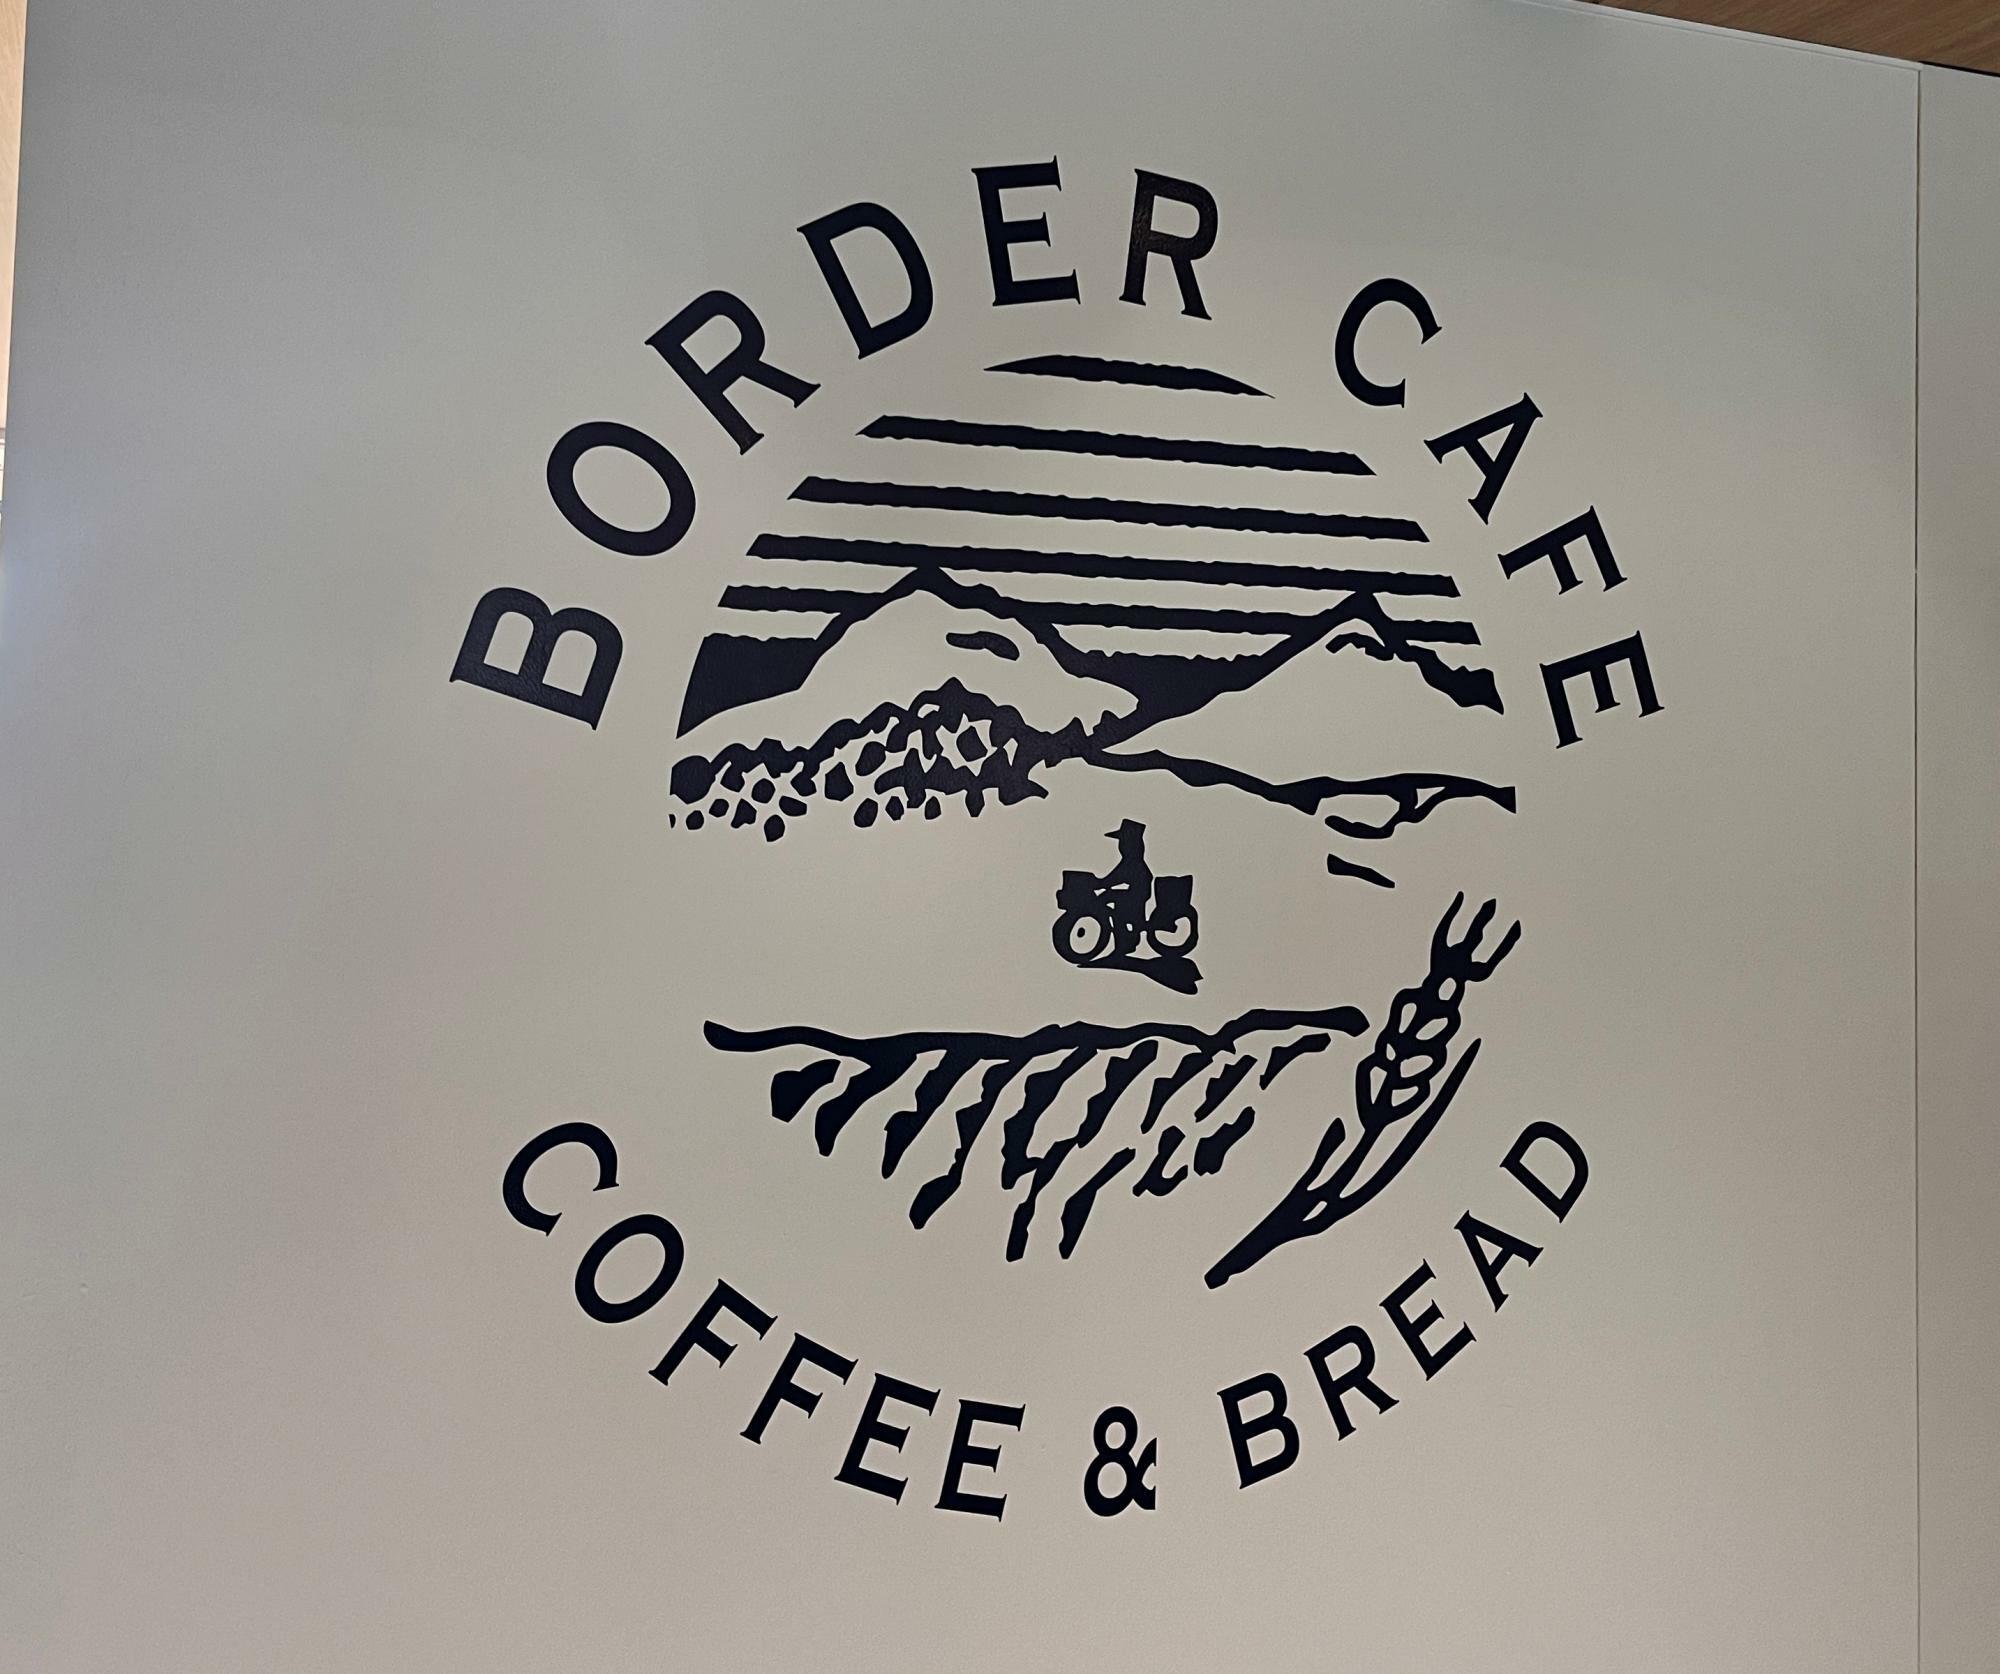 BORDER CAFE 越谷店 ロゴ